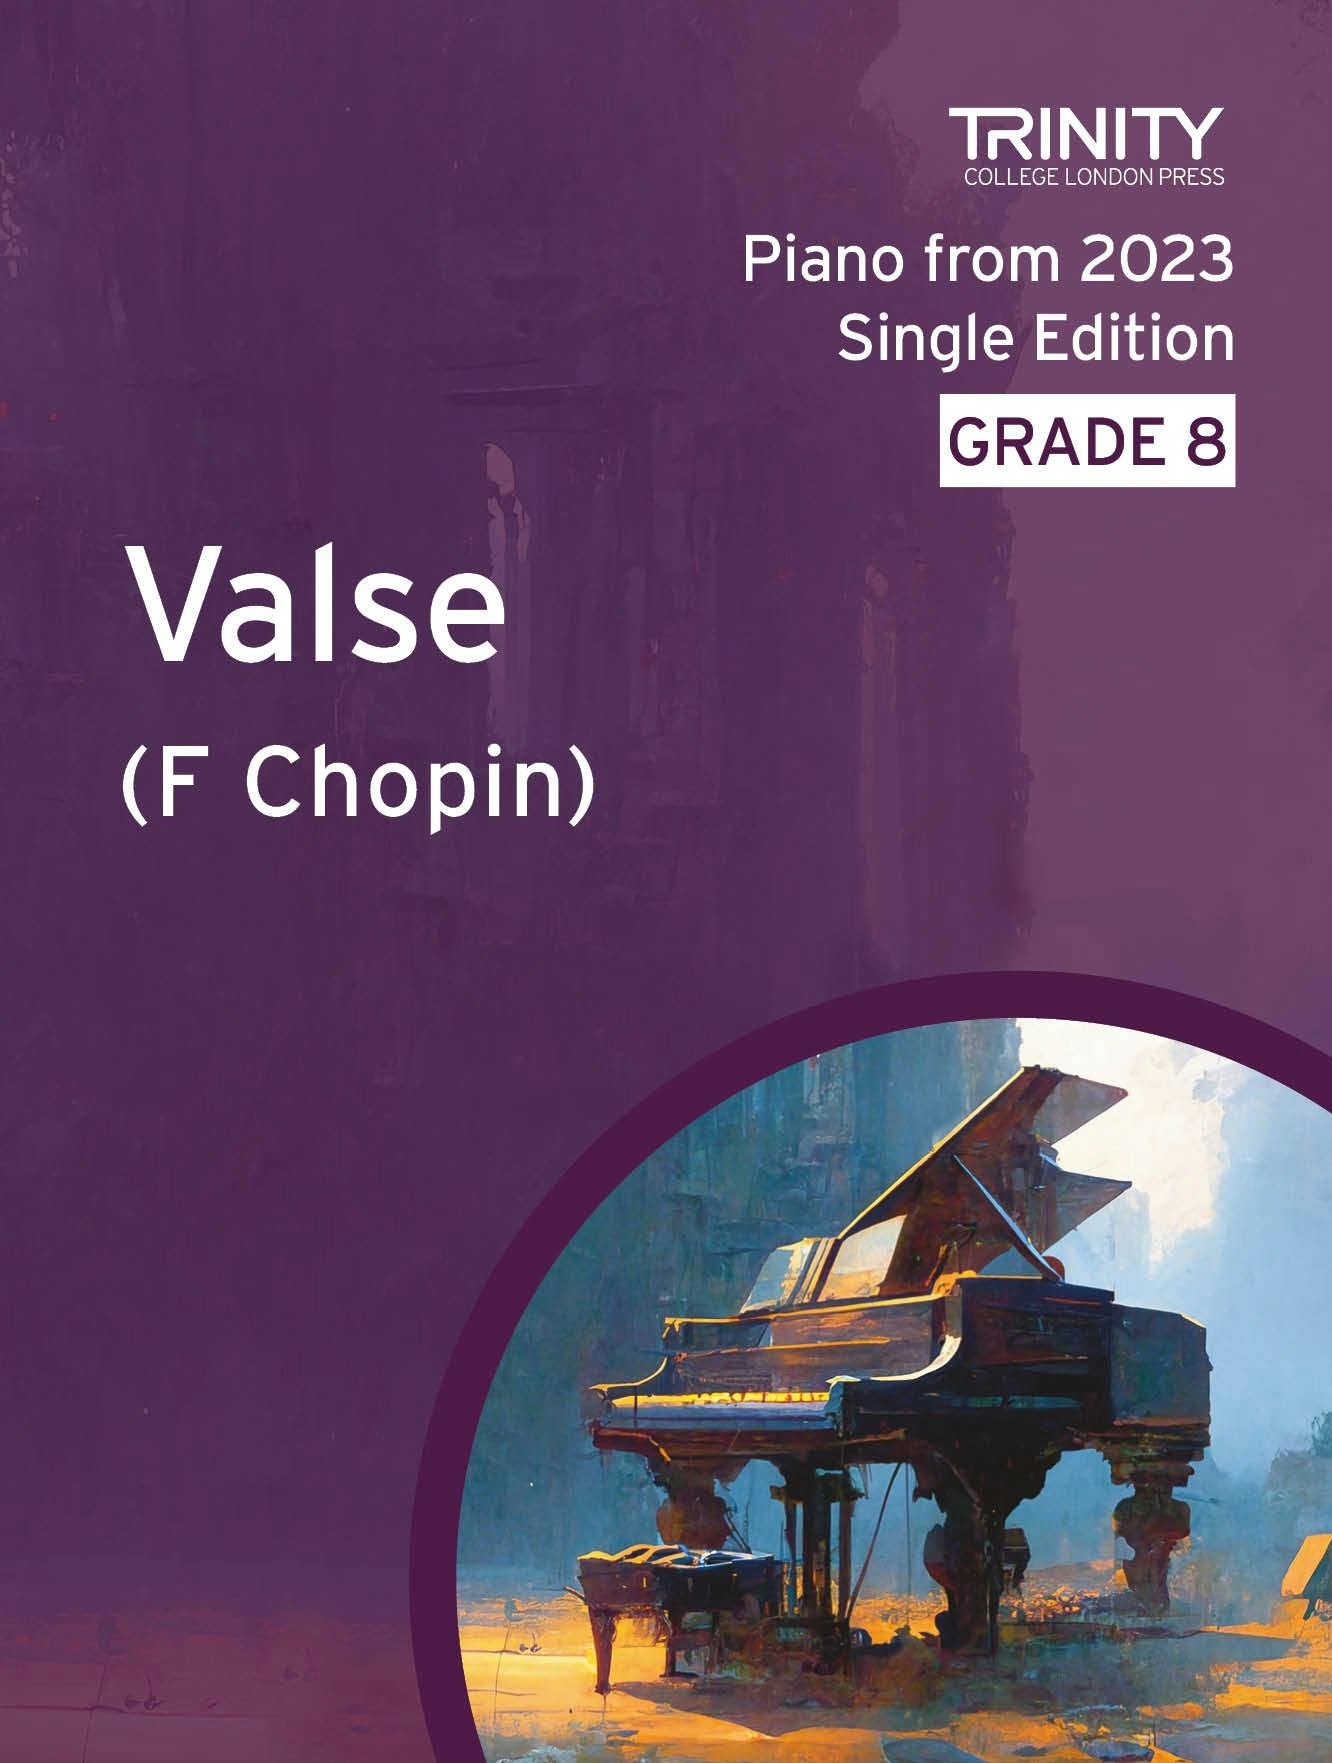 Valse, op. 64, no. 1 - Chopin (Grade 8 Piano) - ebook